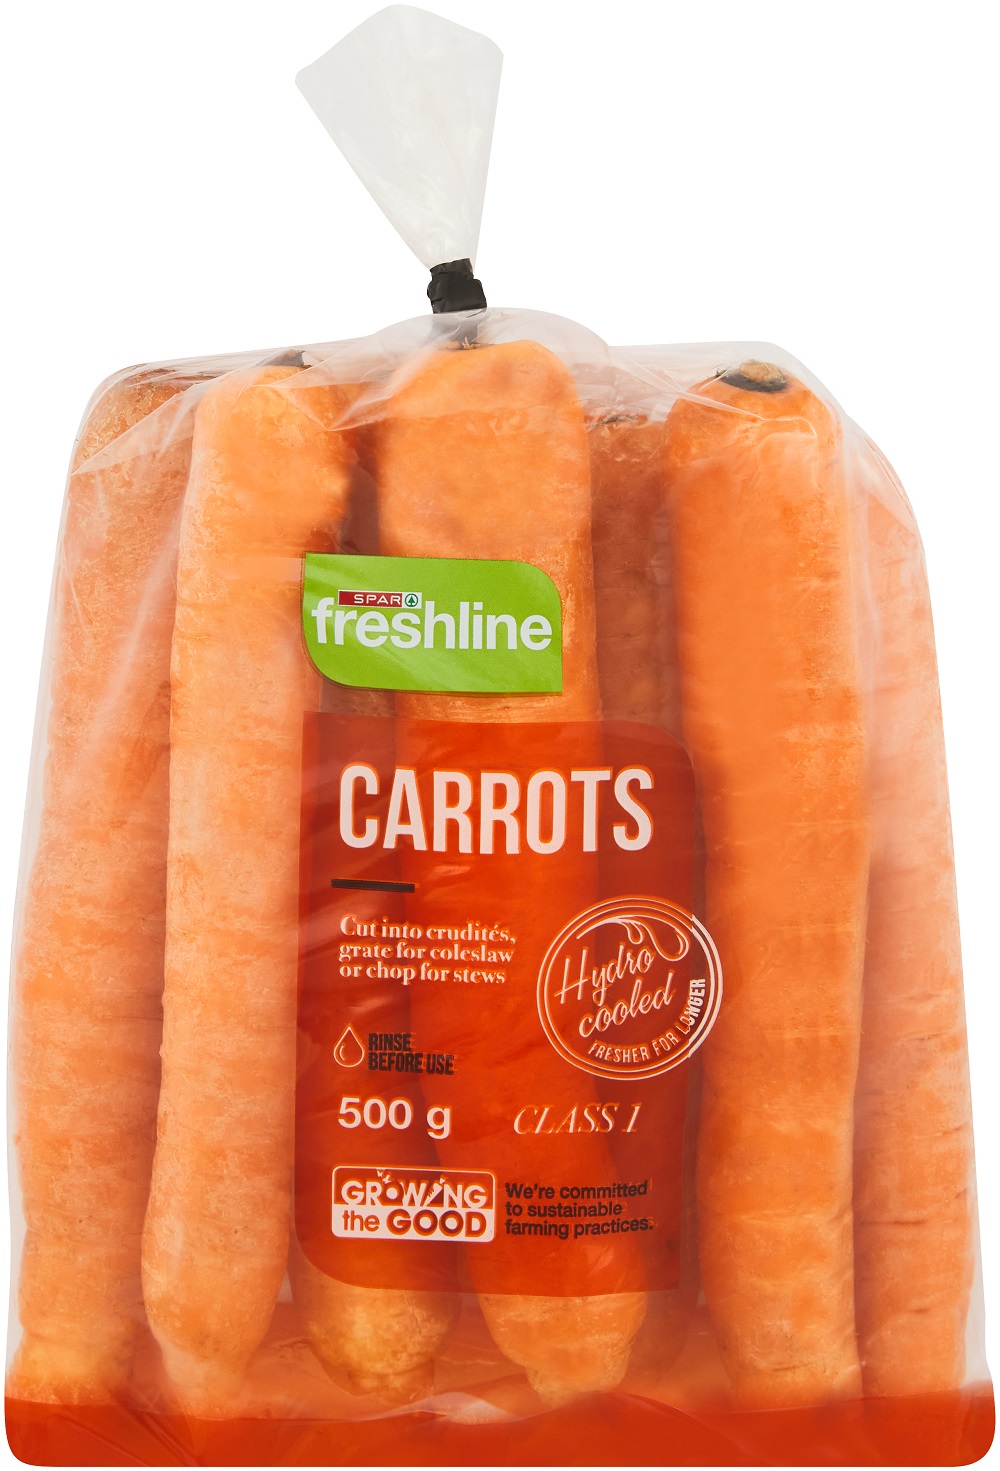 freshline carrots